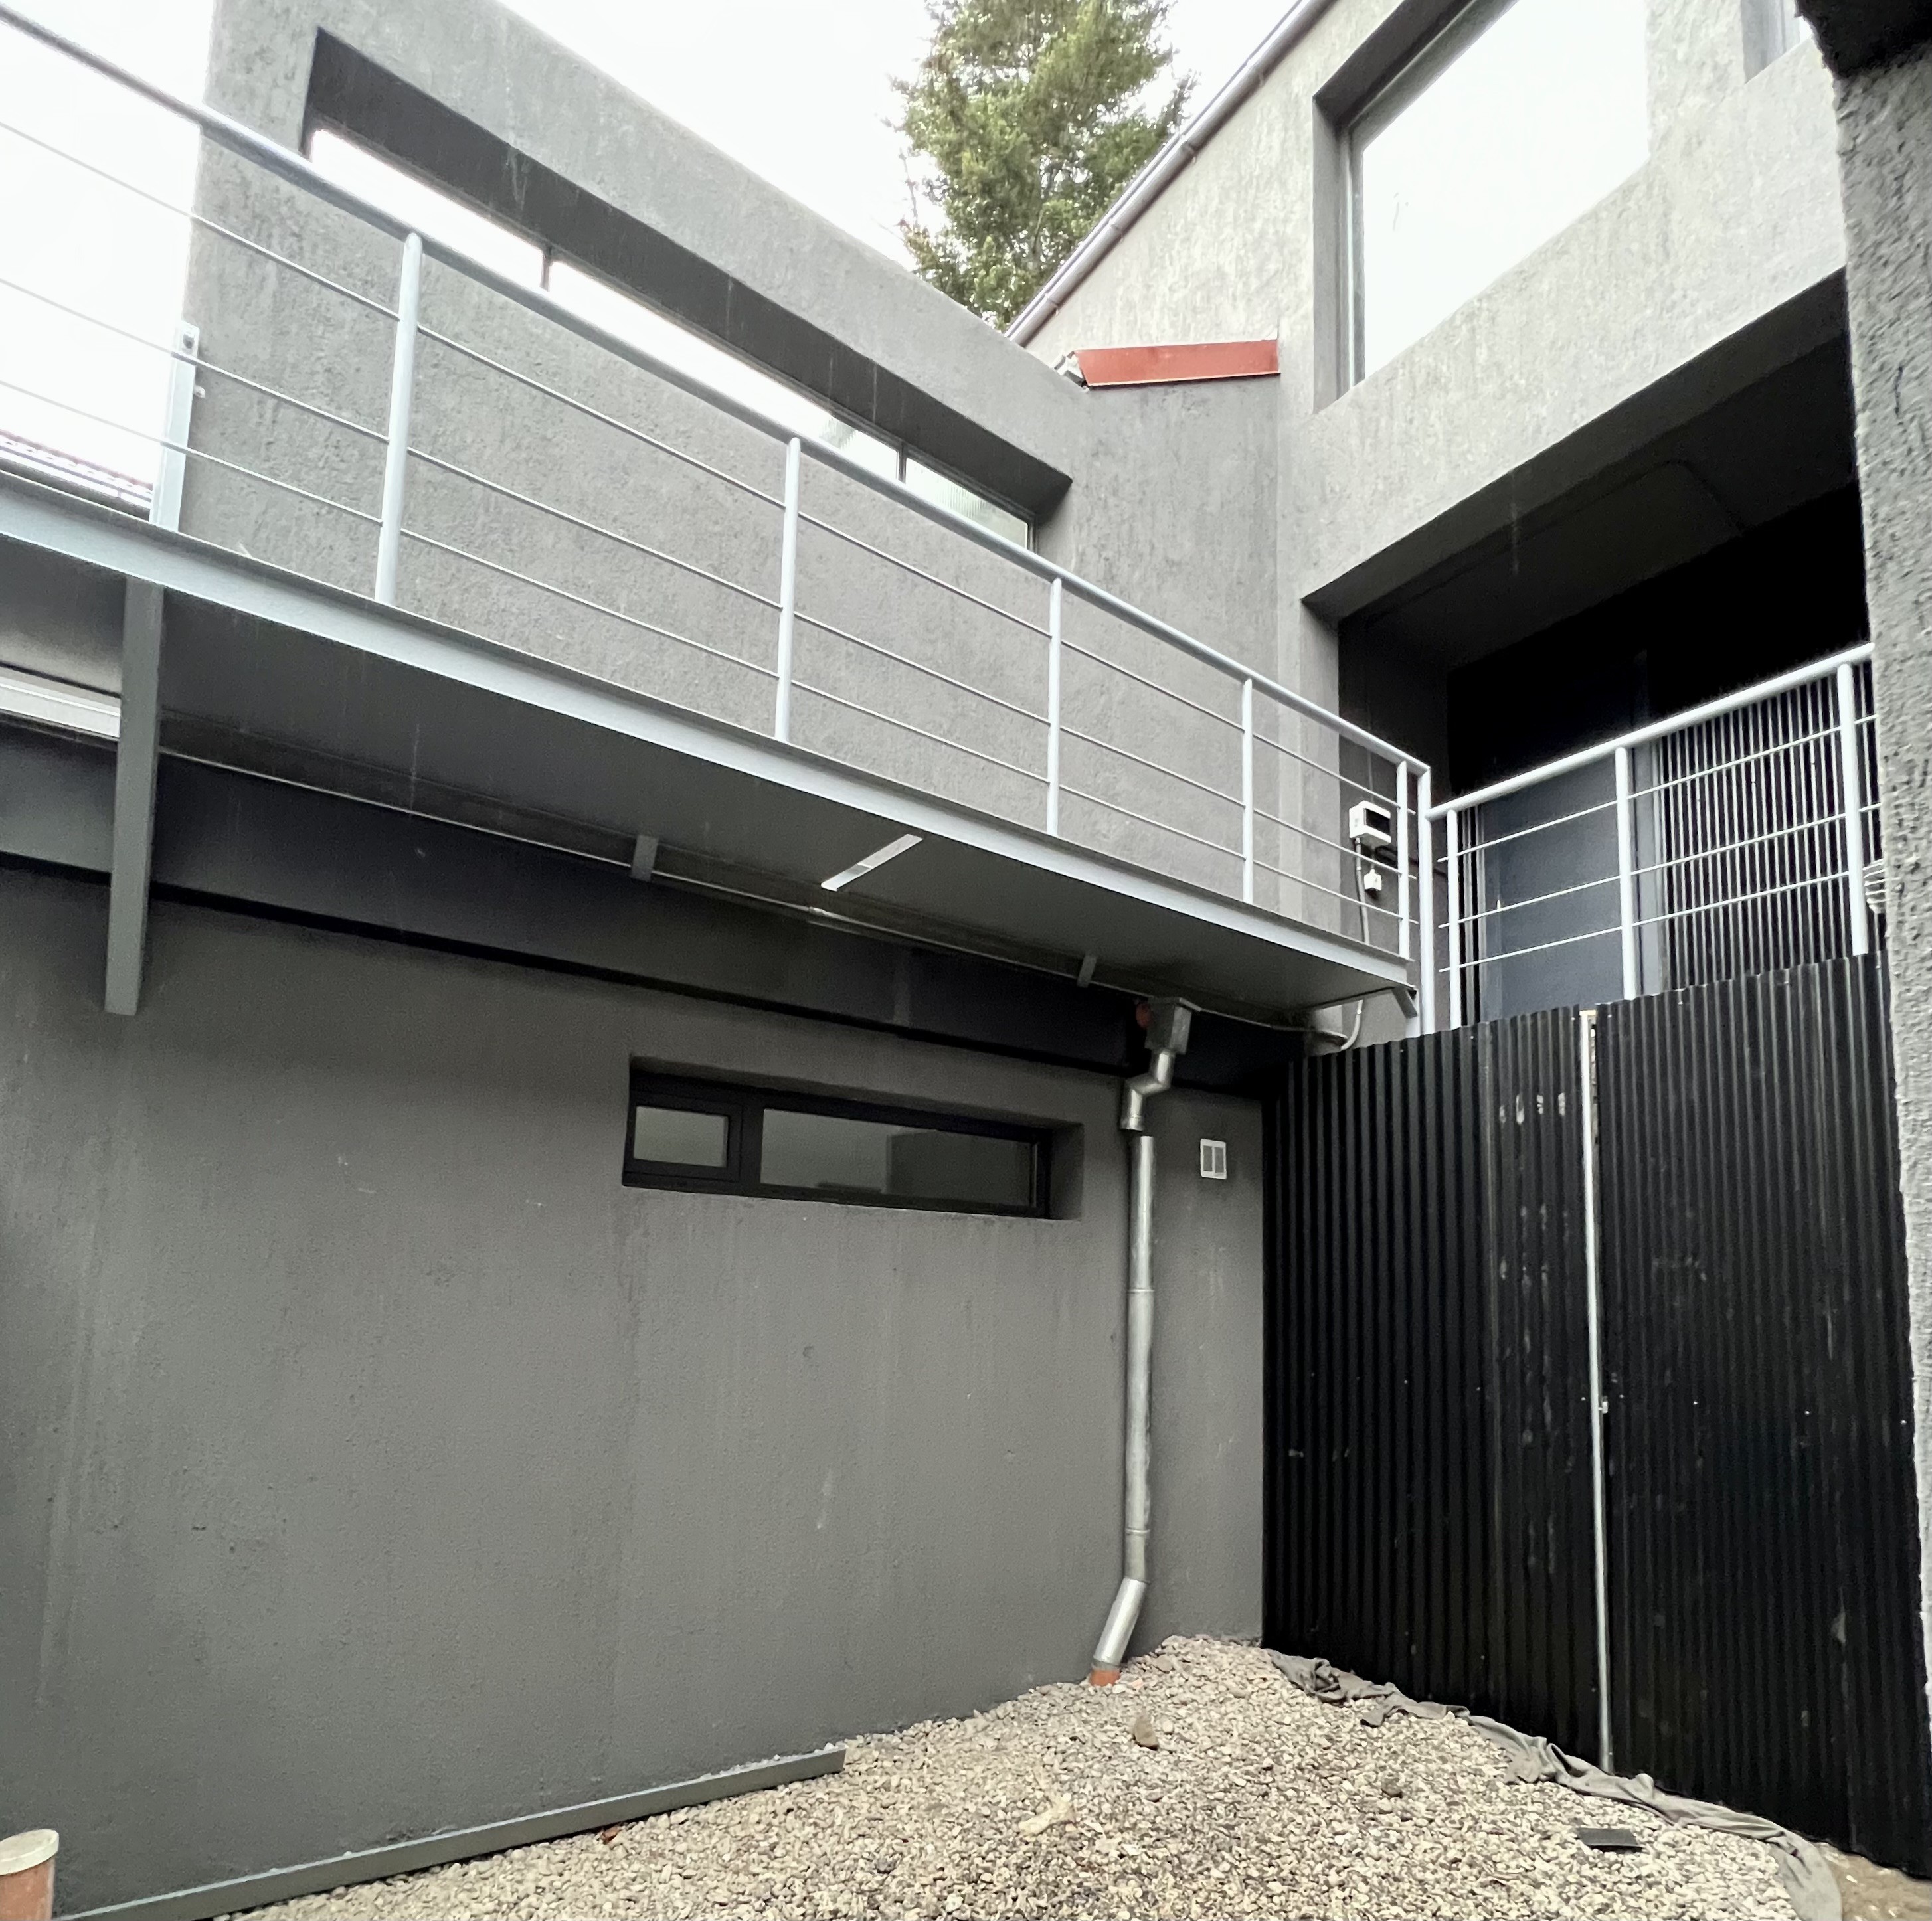 D212 - Departamento a estrenar de 1 dormitorio 53 m2 y 12 m2 de terraza  - Bajada de los Andes - Zona Centro